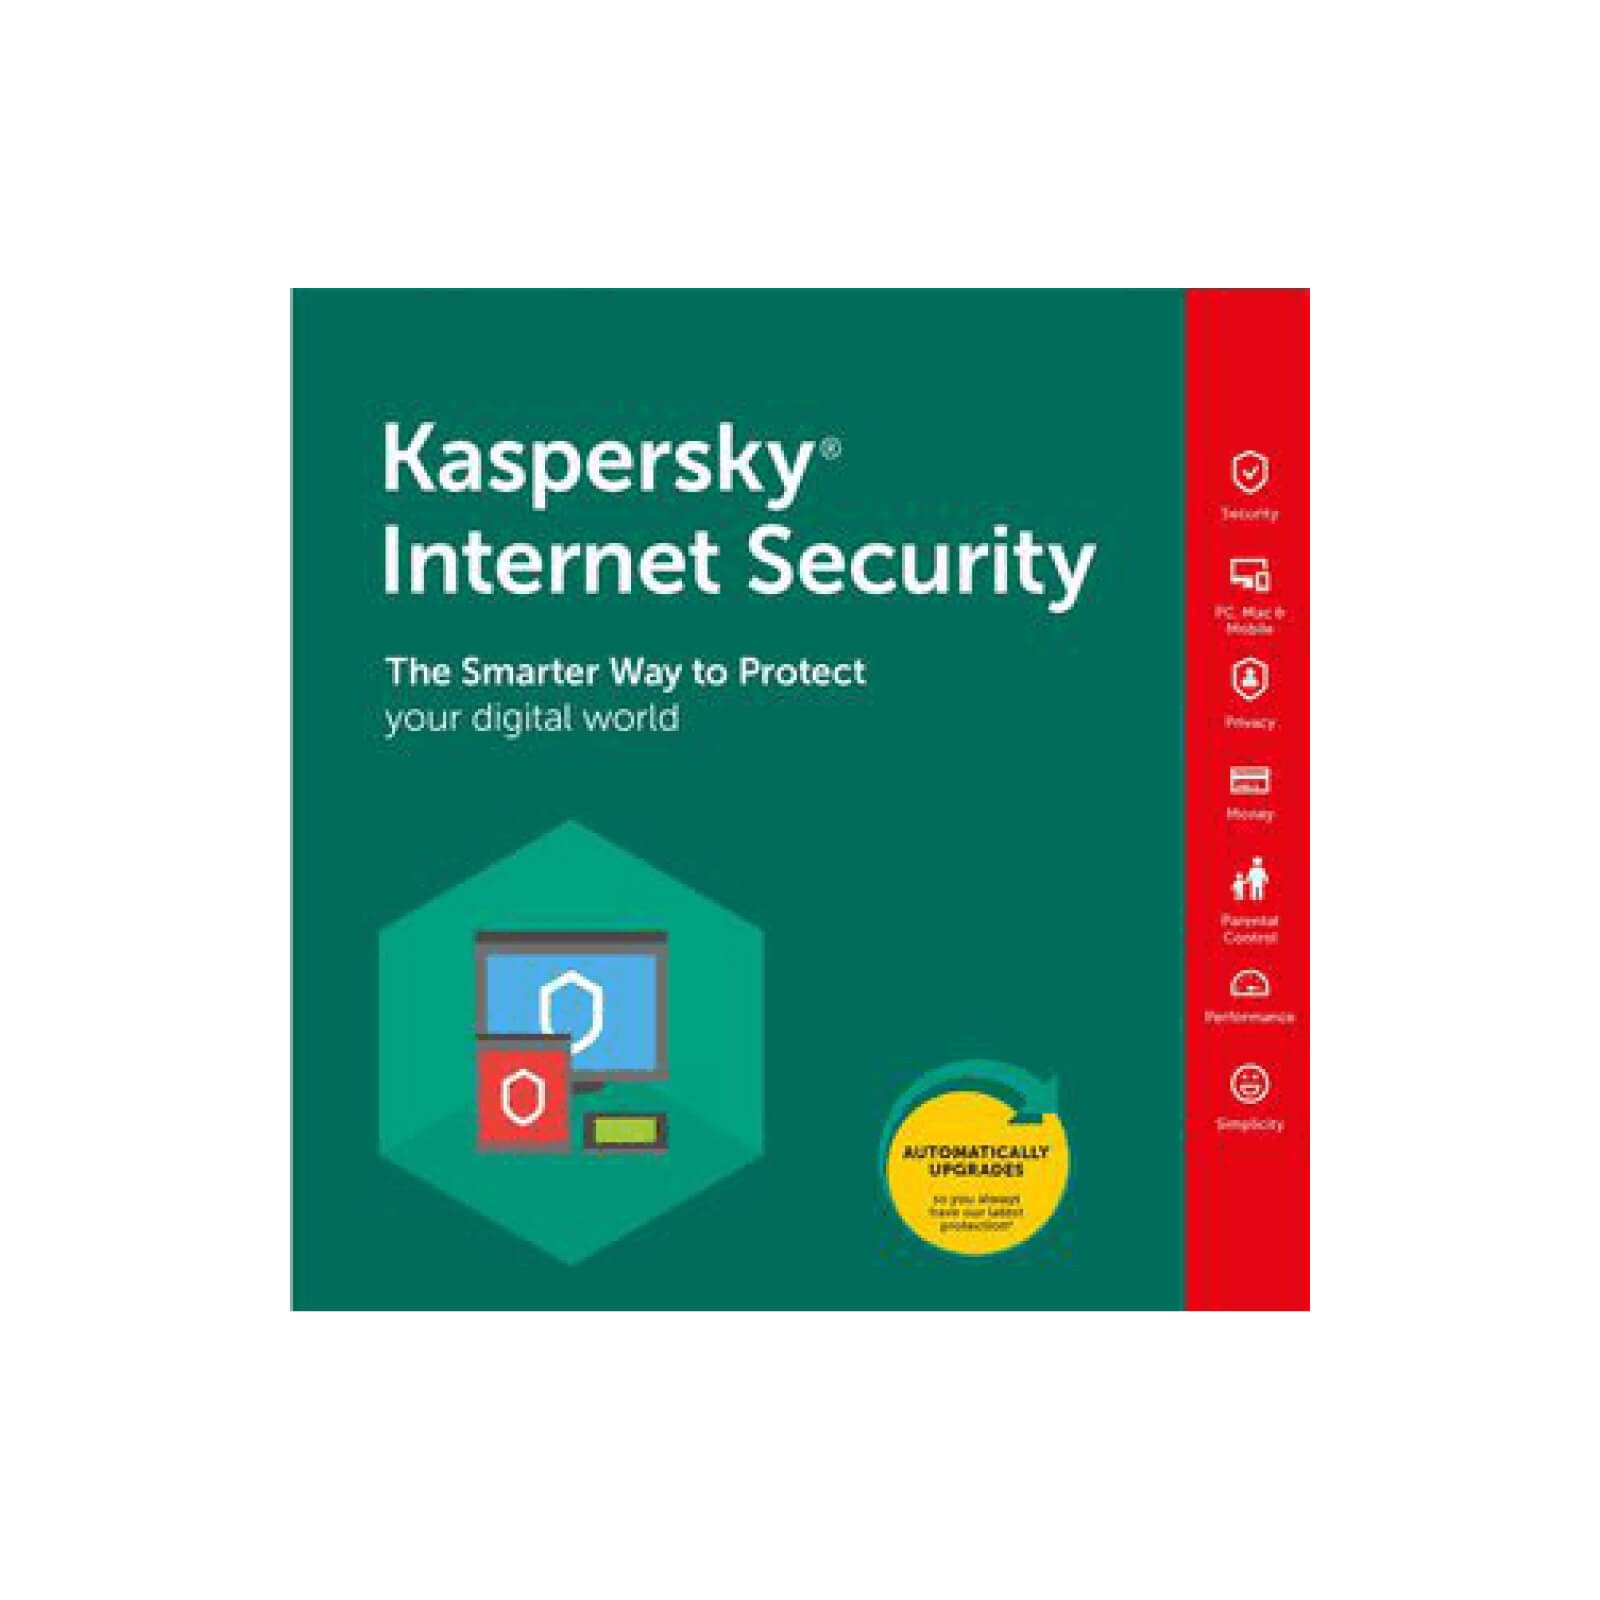 kaspersky internet security reddit